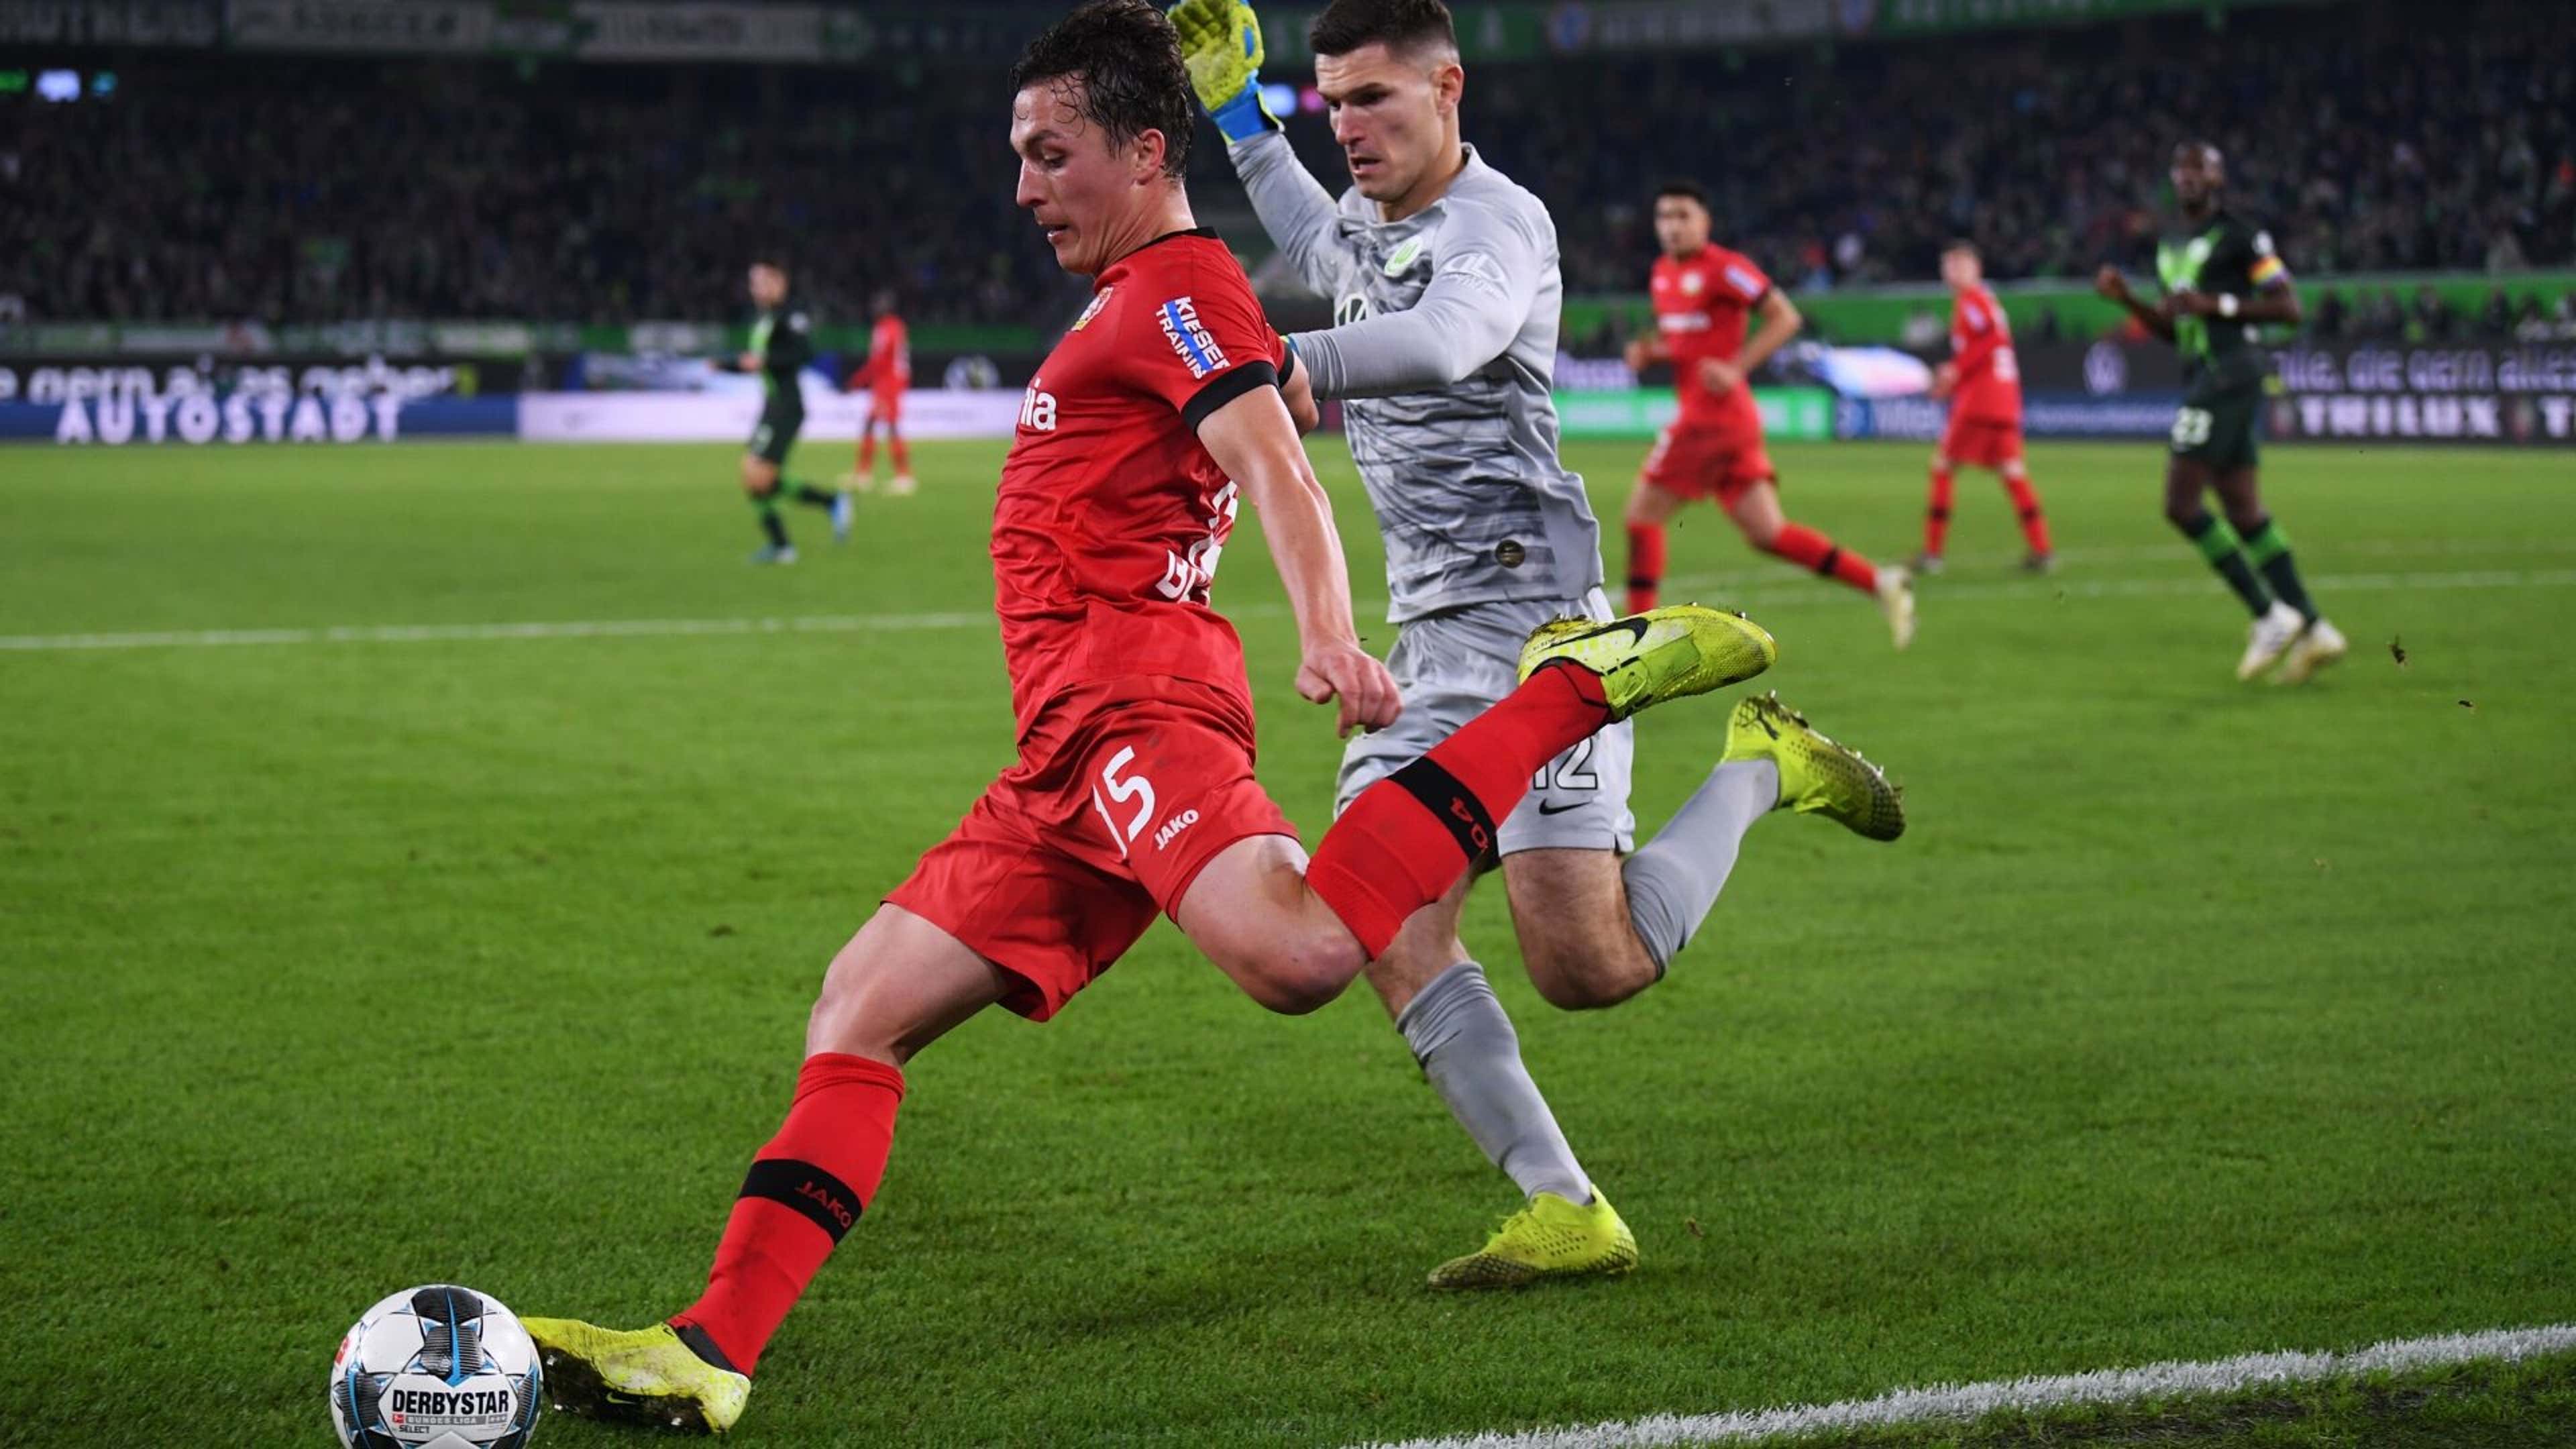 Leverkusen vence Wolfsburg e recupera liderança da Bundesliga; confira os  outros jogos da rodada - Folha PE